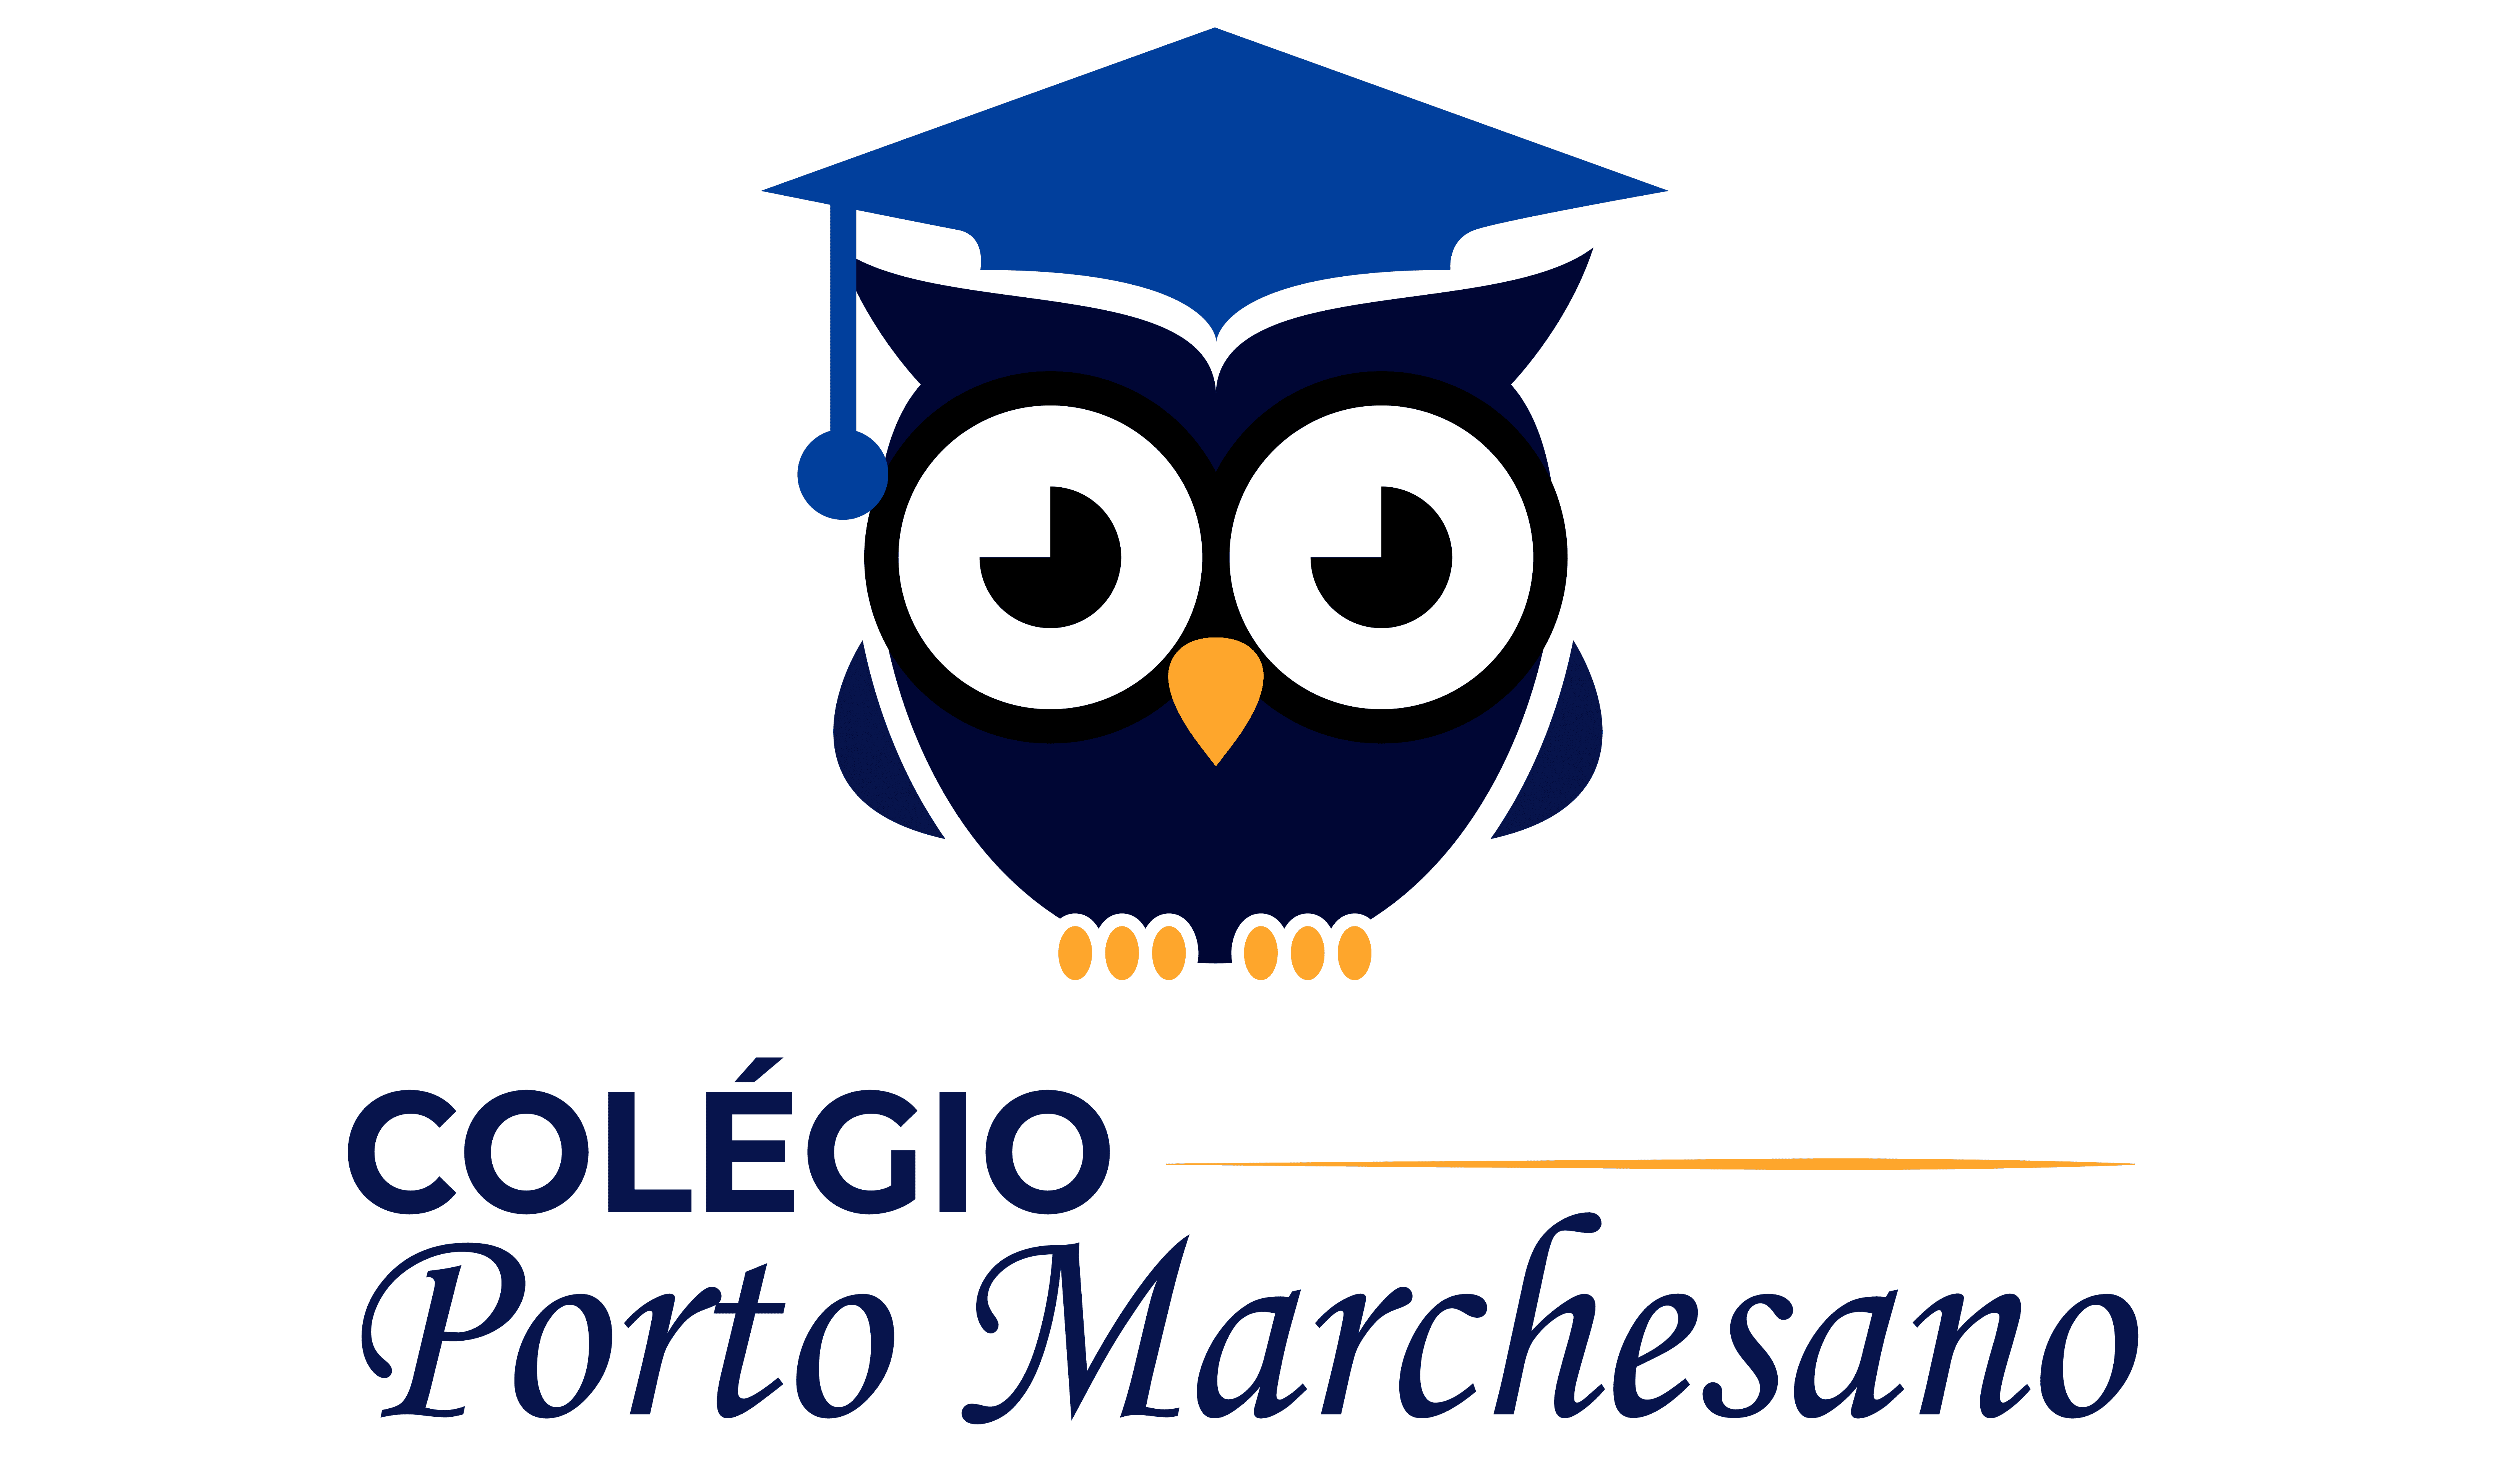  Colégio Porto Marchesano 